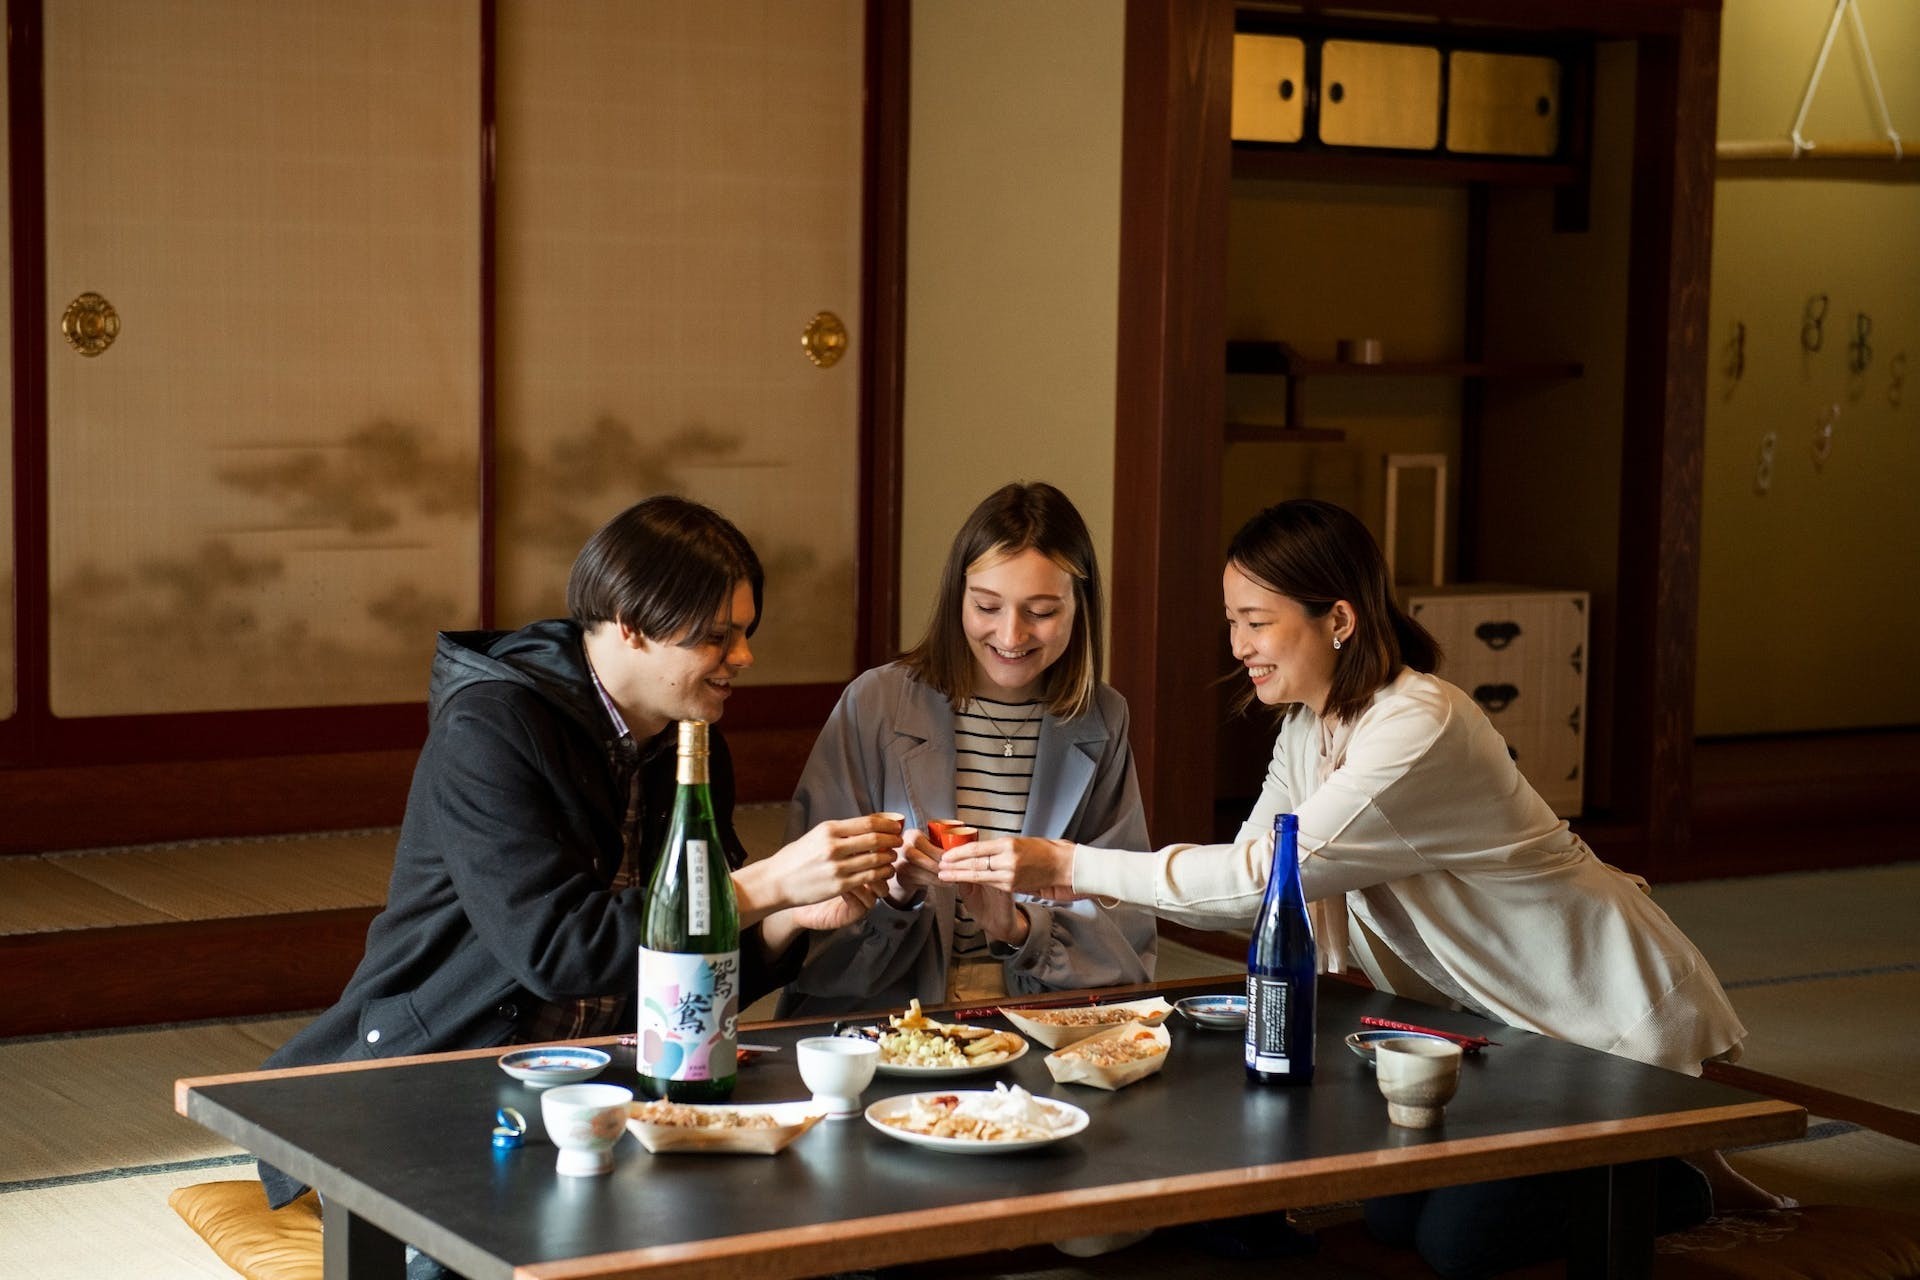 處處可見能感受福井縣傳統文化的裝潢與餐具